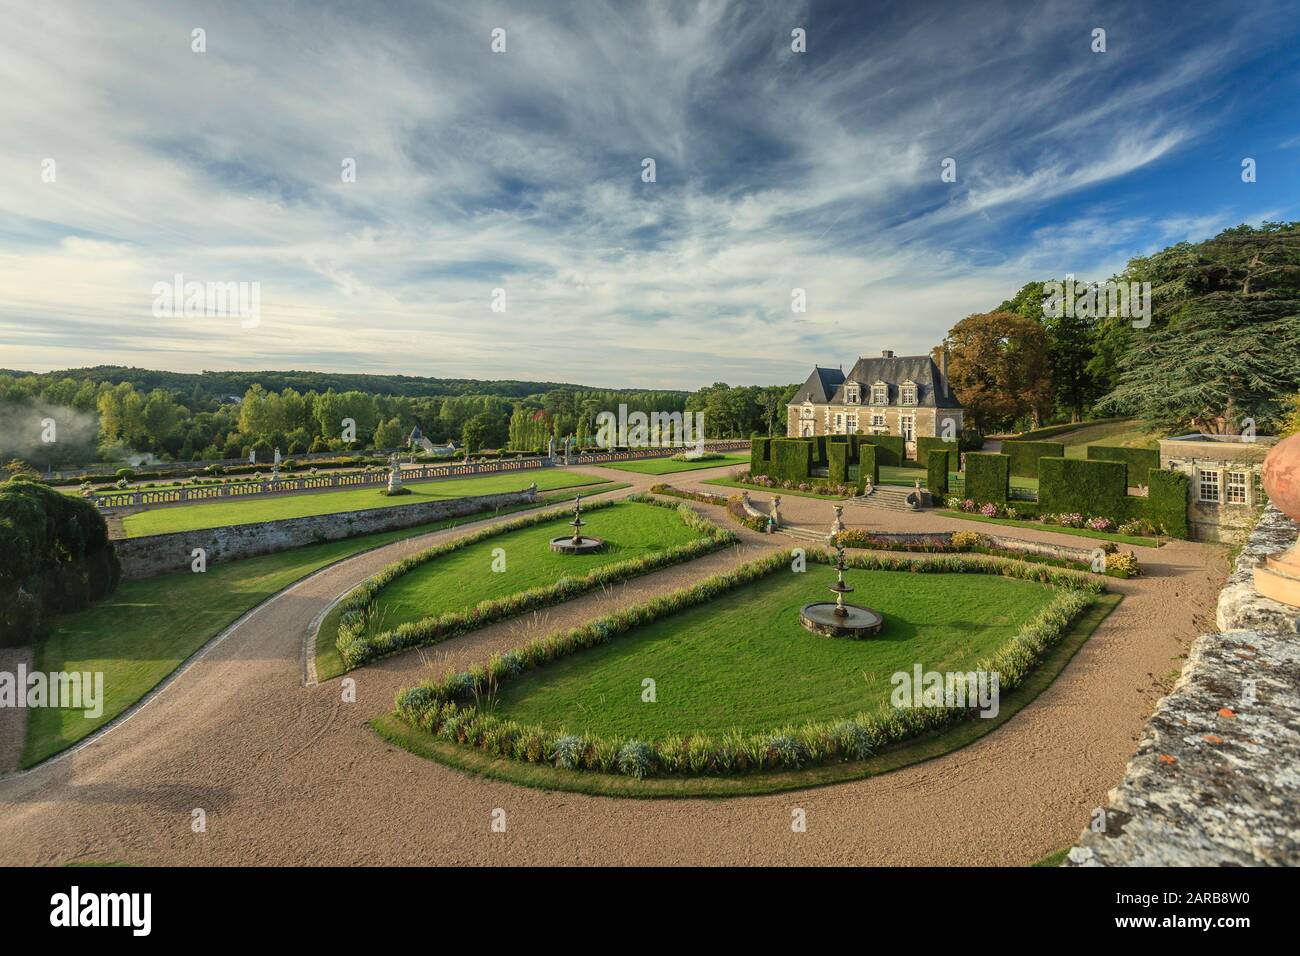 Francia, Indre et Loire, Chancay, Chateau de Valmer giardini, vista sulla terrazza delle fontane fiorentine (menzione obbligatoria Chateau de Valmer) // Fran Foto Stock